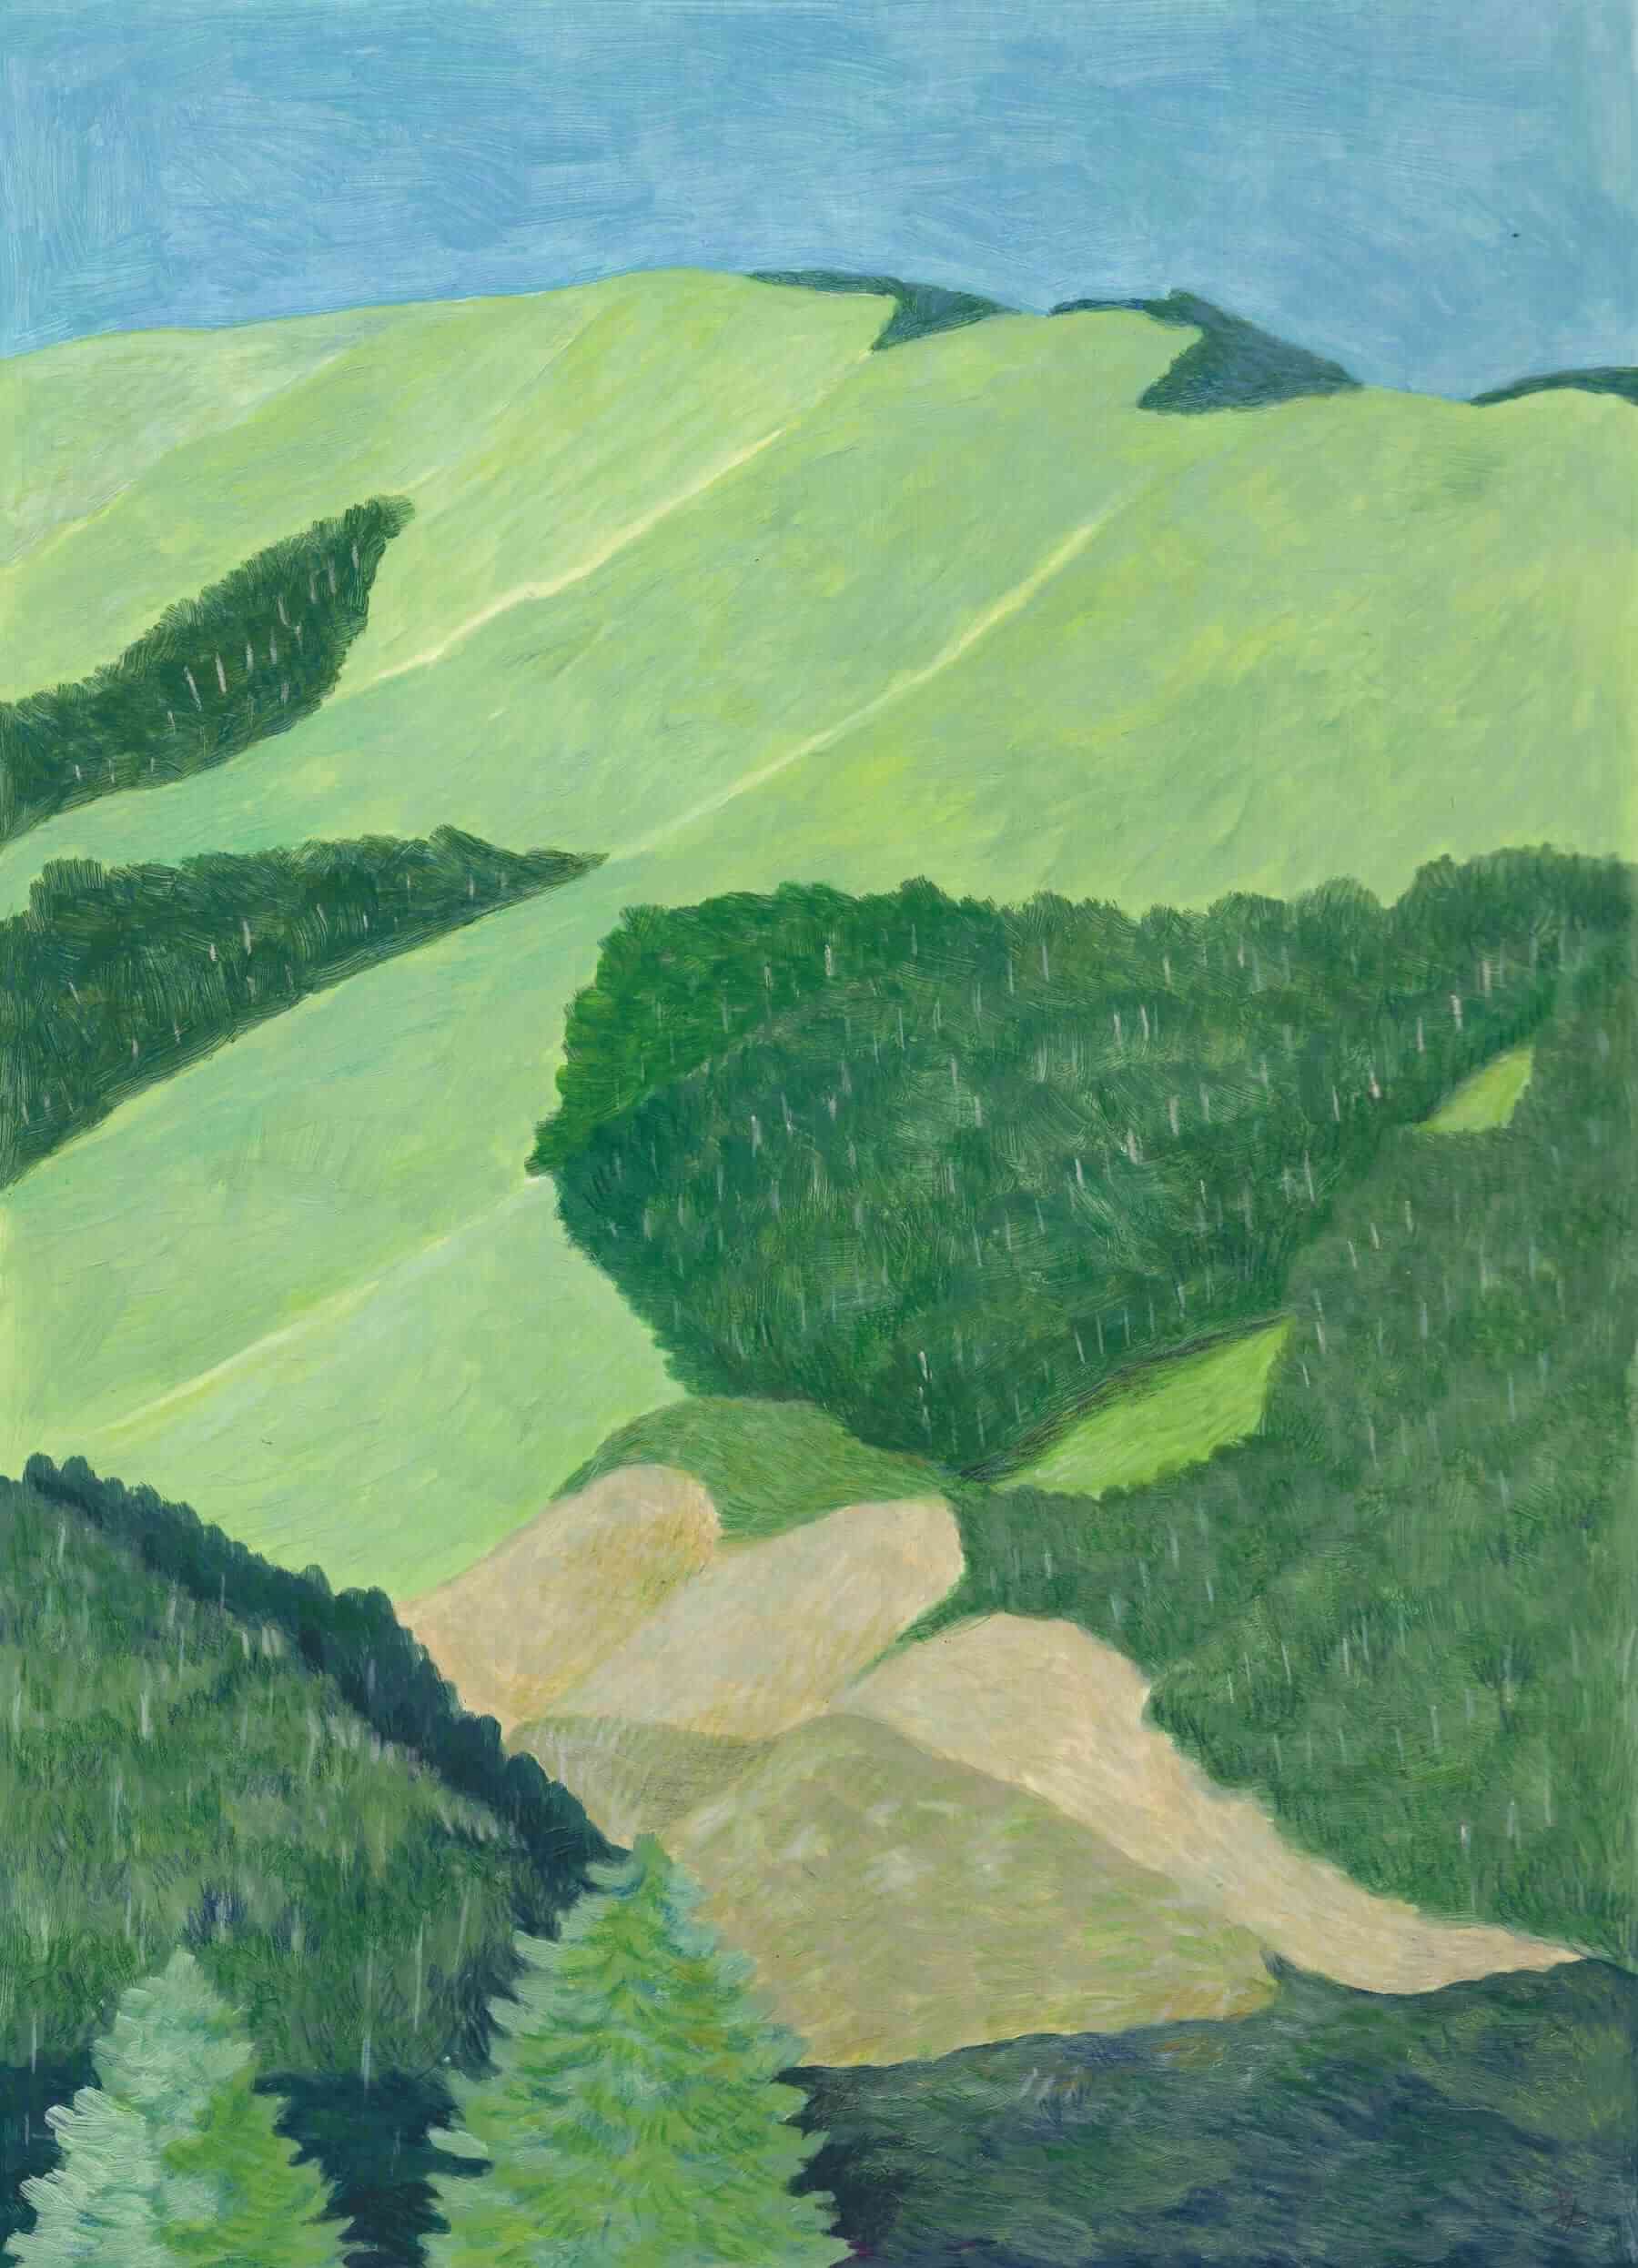 收錄於《緩慢是風景的名字》的〈綠色地毯〉。這是合歡山的一角，萬物在陽光下和諧地銜接成一幅景象，讓米力想起人們存在於社會的狀態。